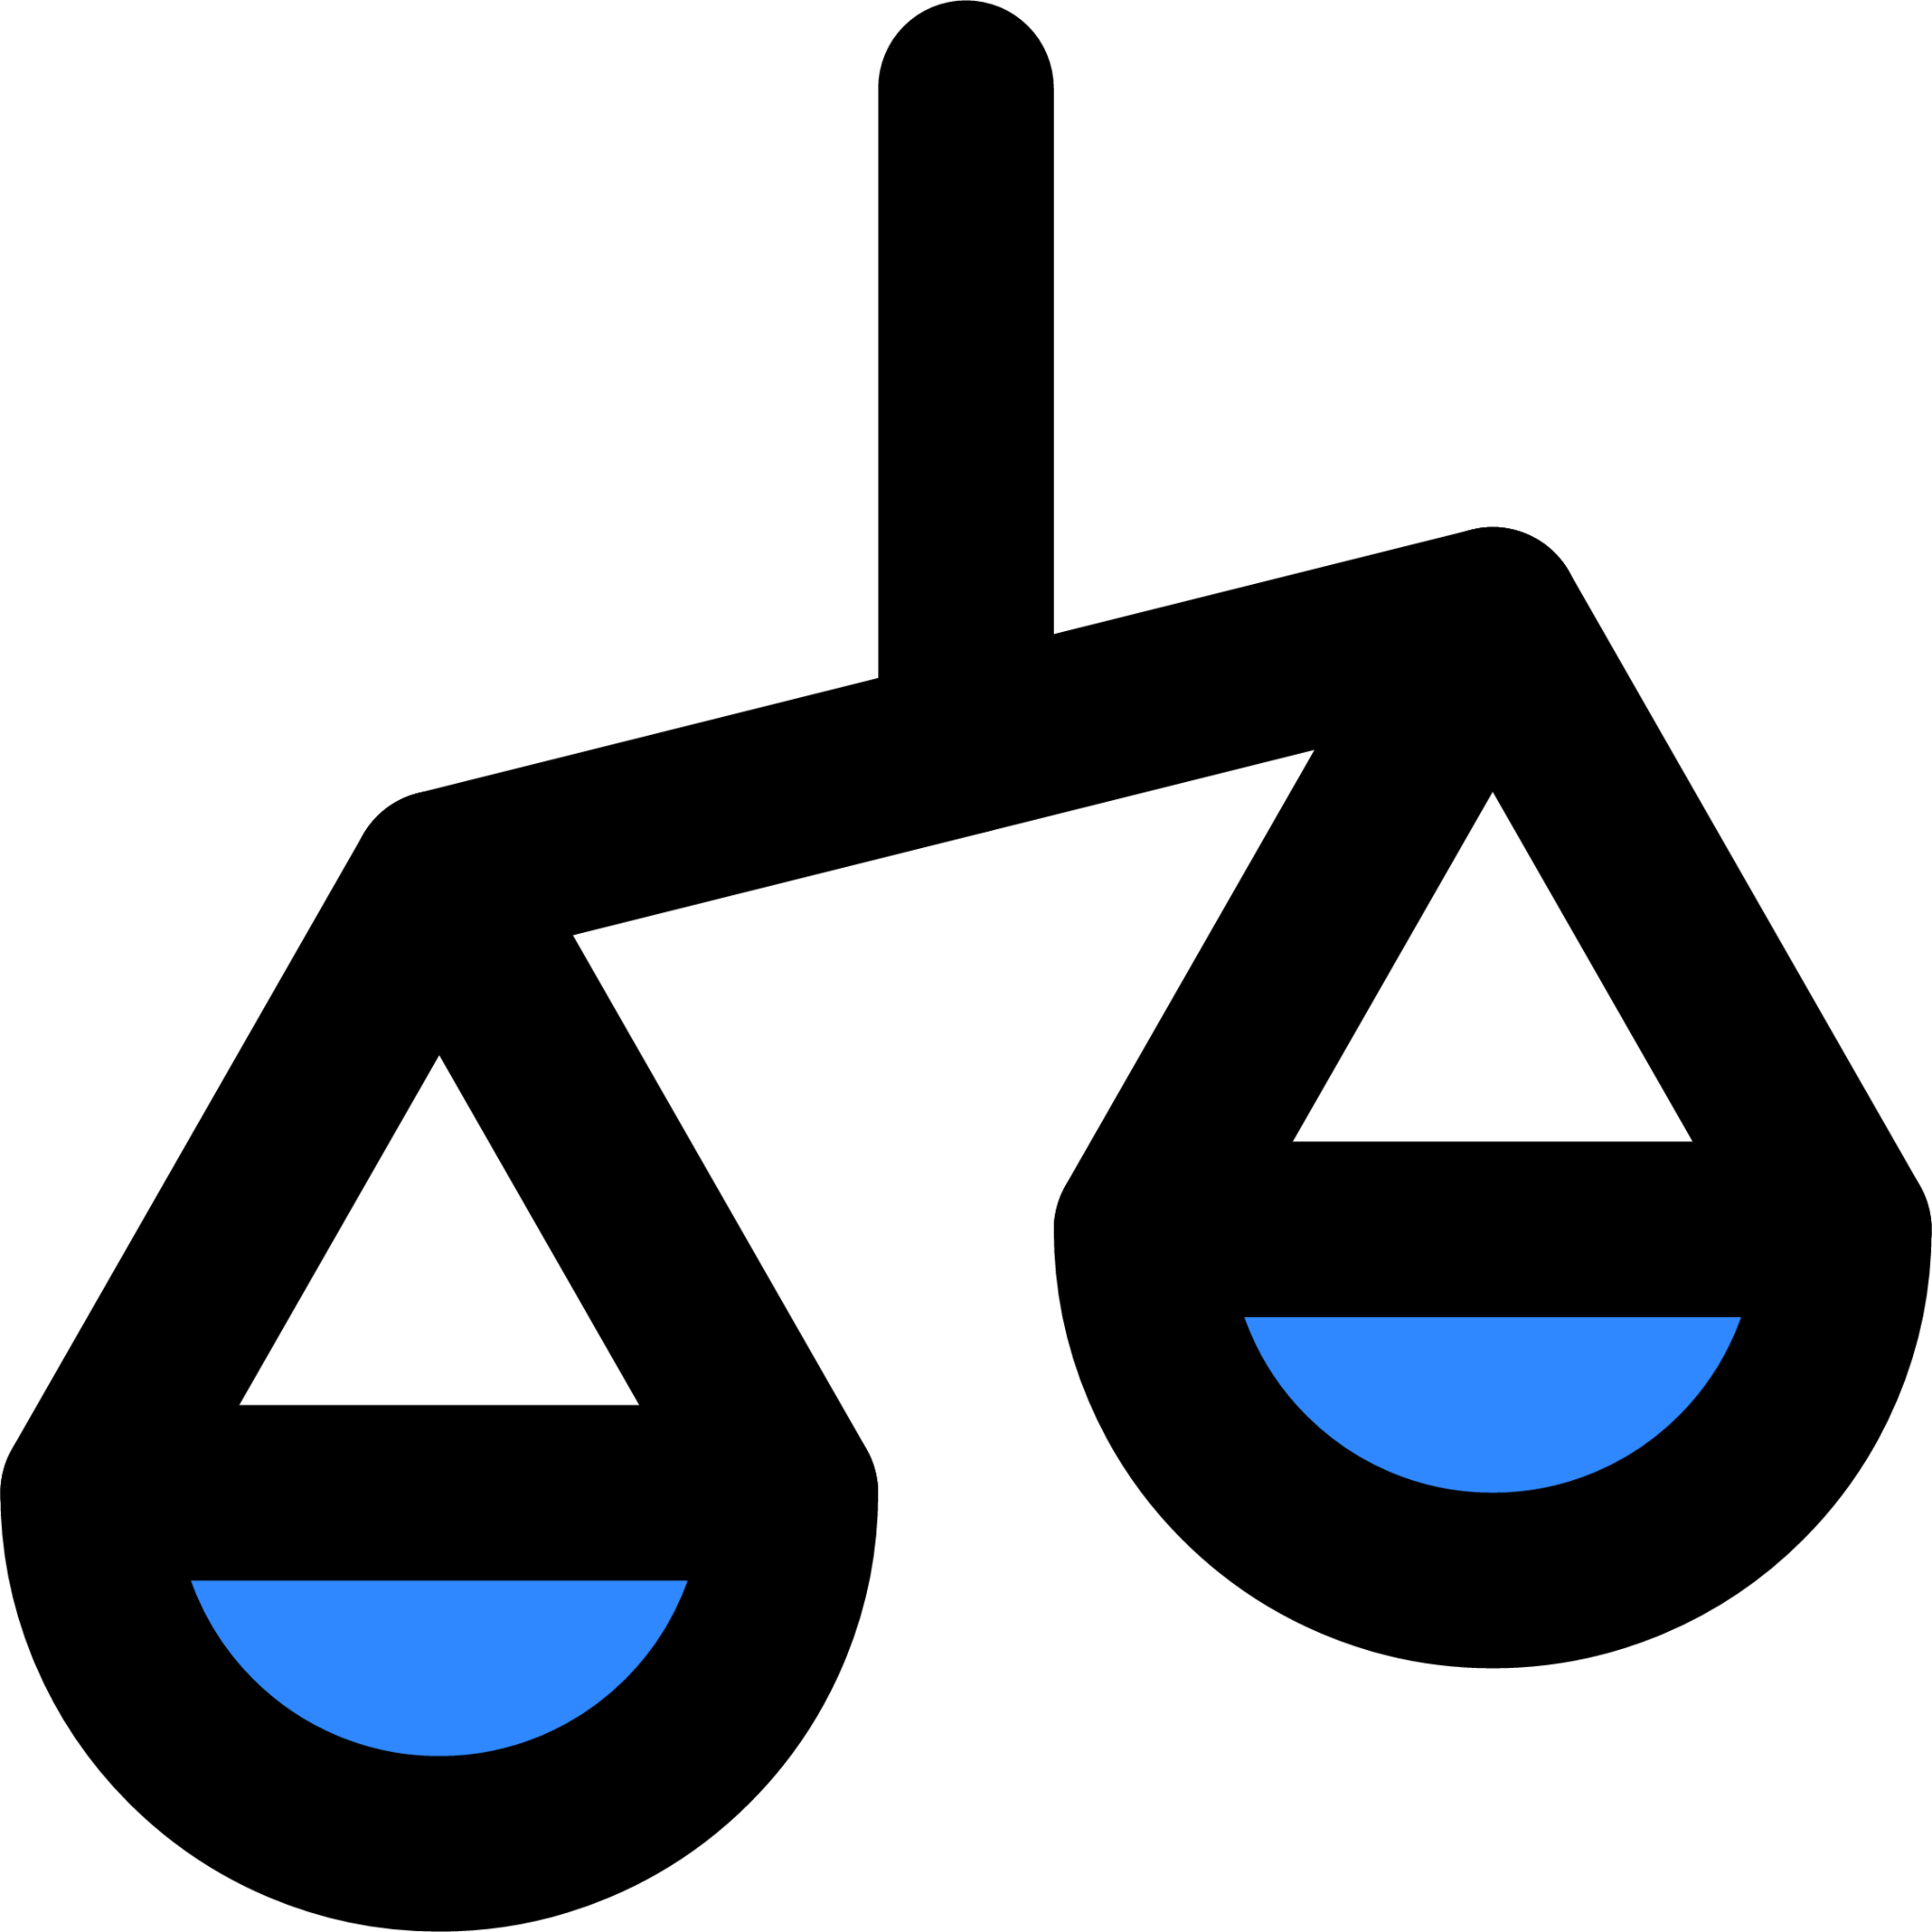 imbalance icon